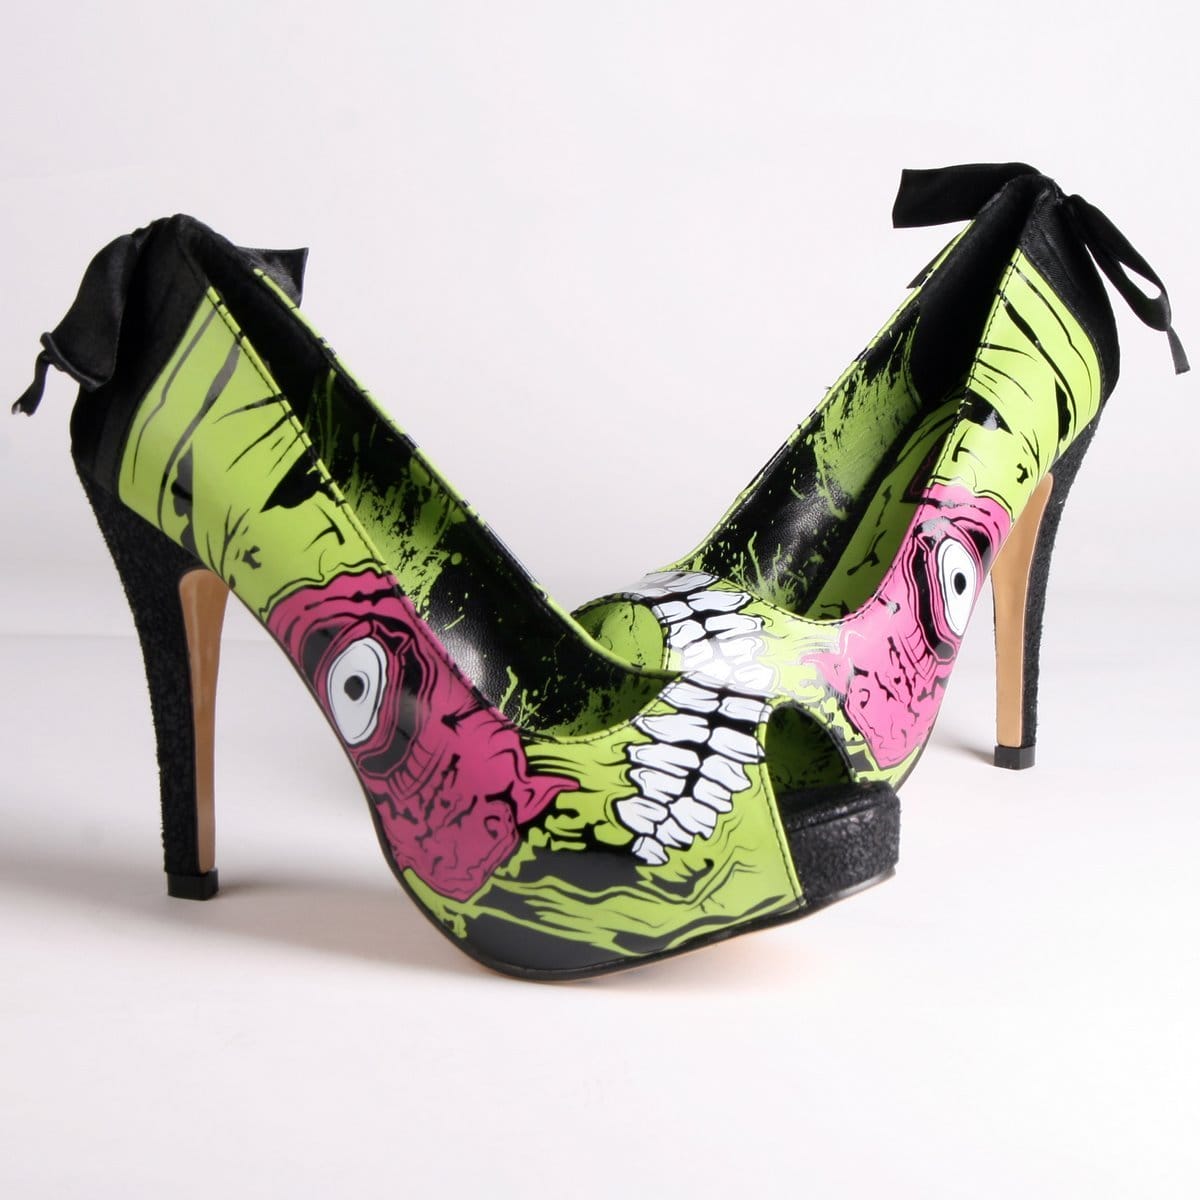 Zombie heels